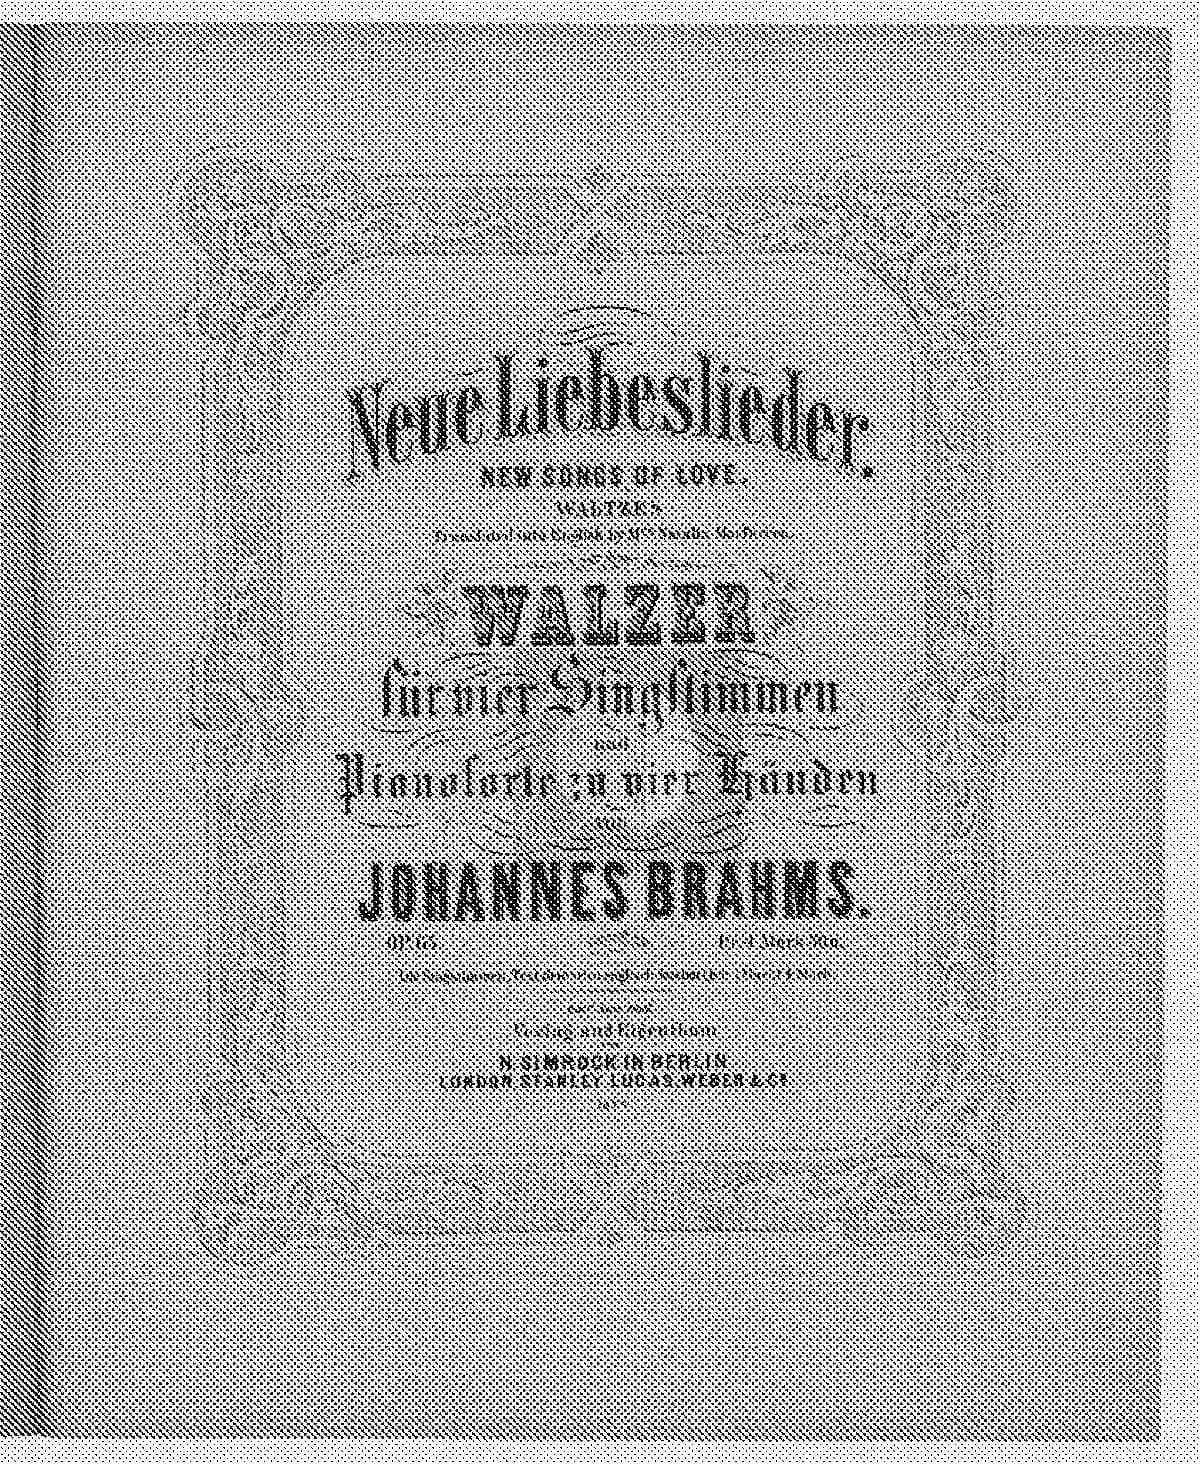 Johannes Brahms’ New Liebeslieder Waltzes score cover